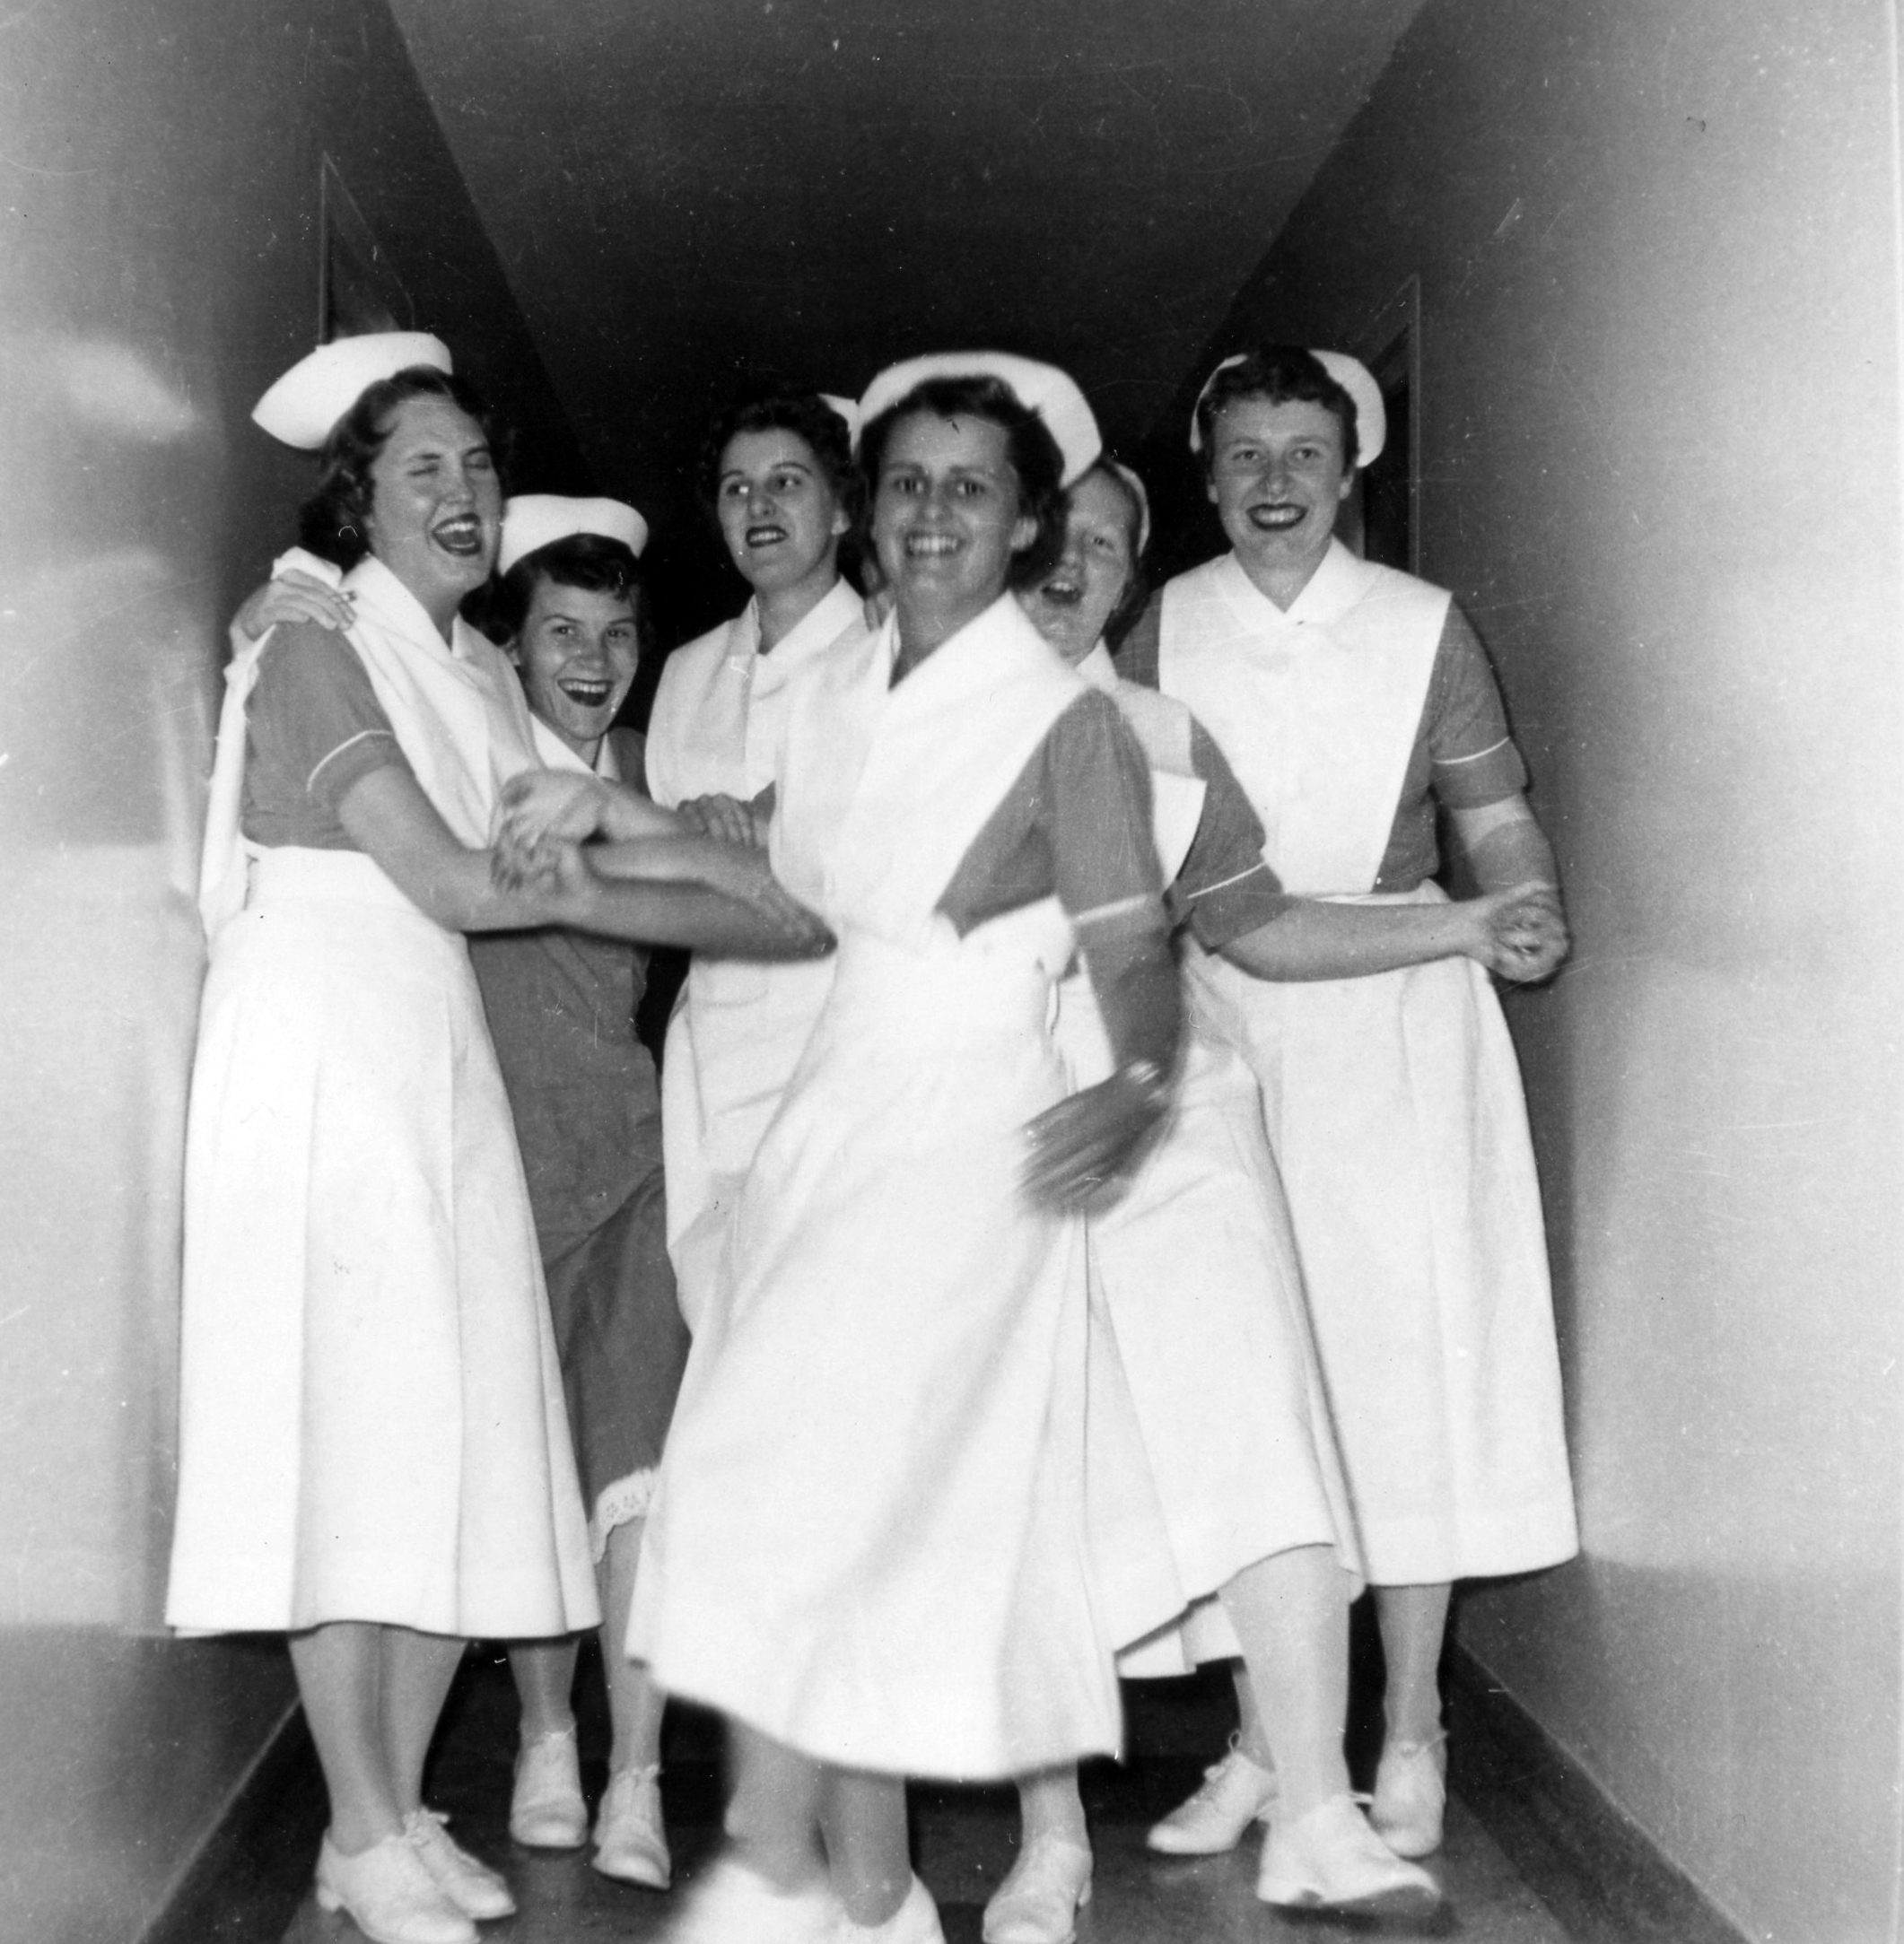 Six femmes en uniforme d’infirmière rient et gesticulent dans un corridor étroit.